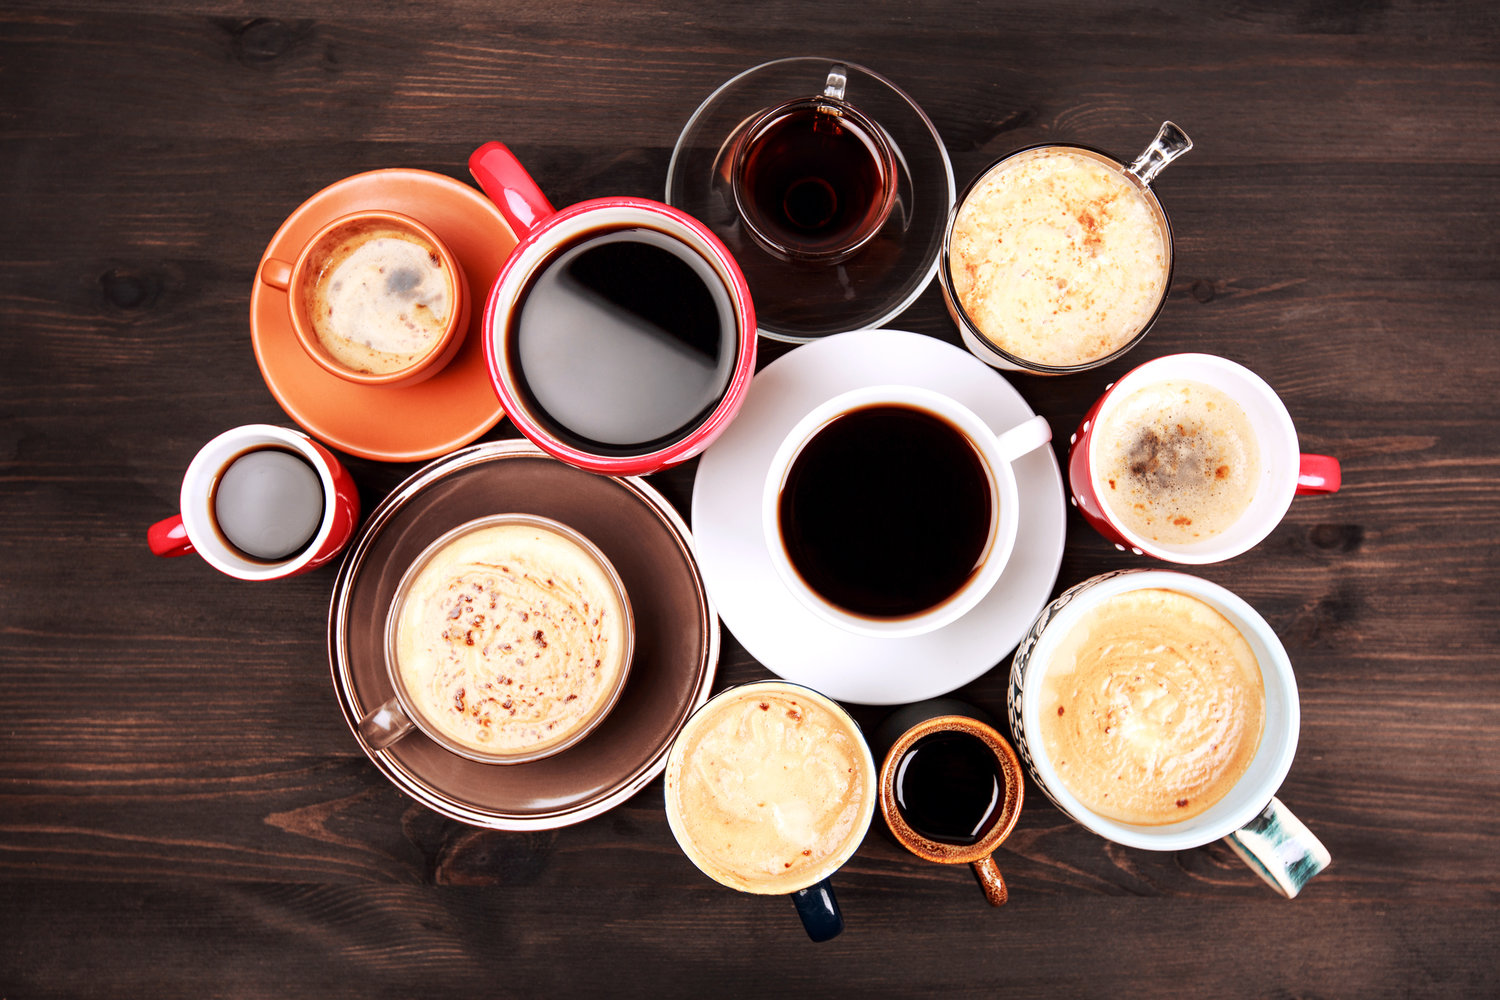 Una buena taza para disfrutar tu delicioso café por la mañana, tarde o noche es esencial.